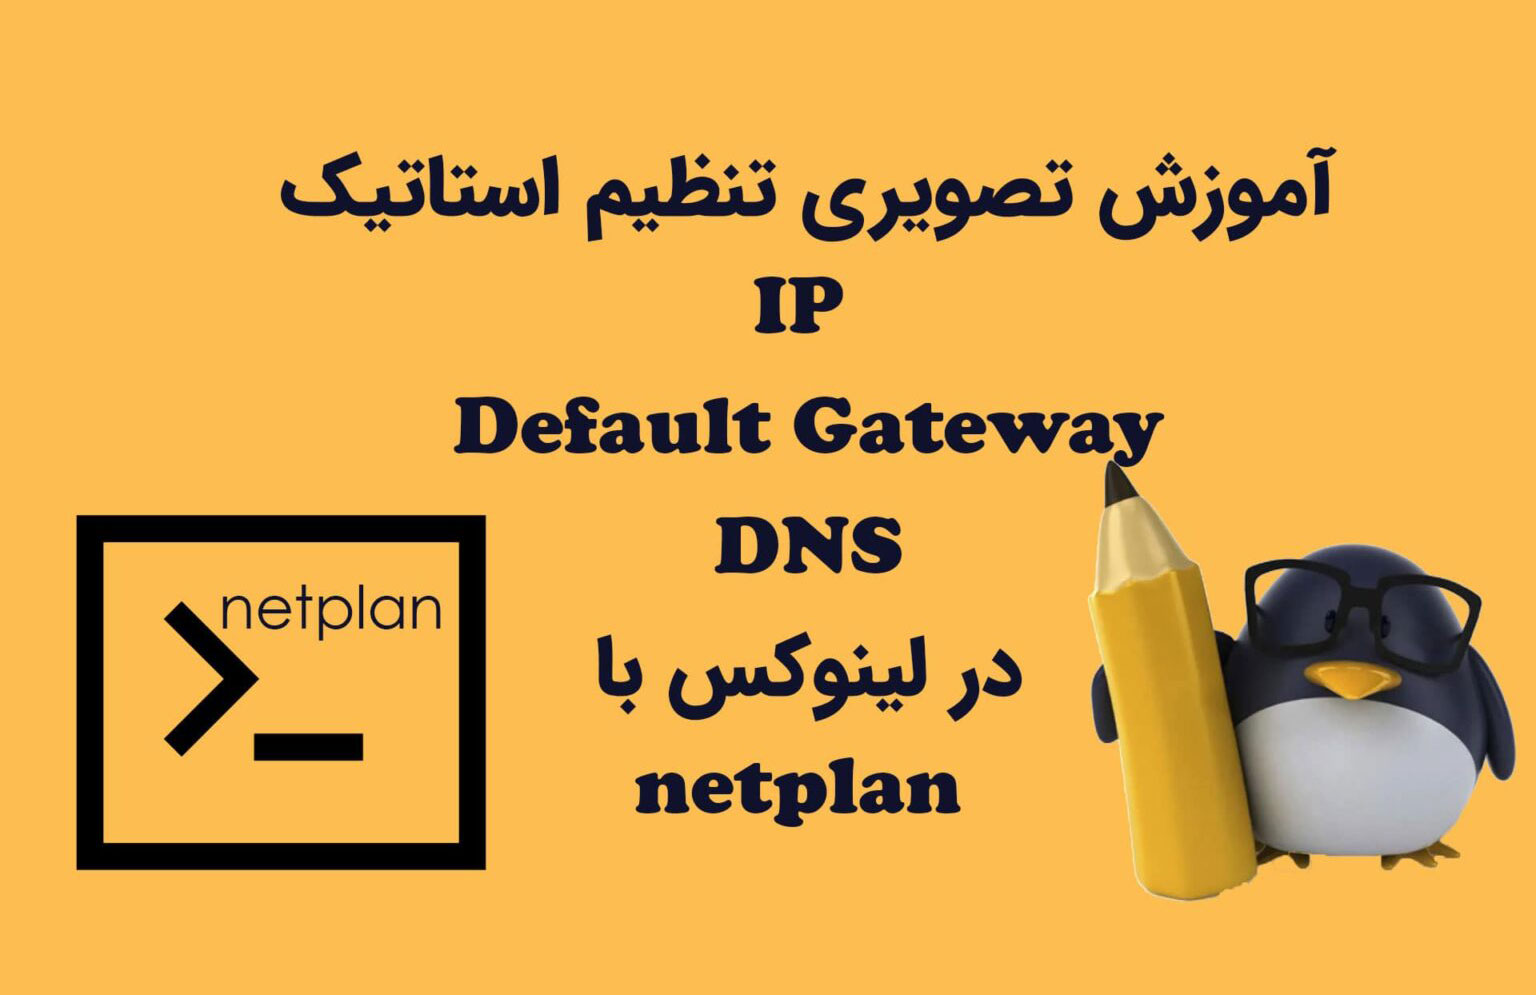 آموزش تصویری تنظیم استاتیک IP، Default Gateway و DNS در لینوکس با netplan